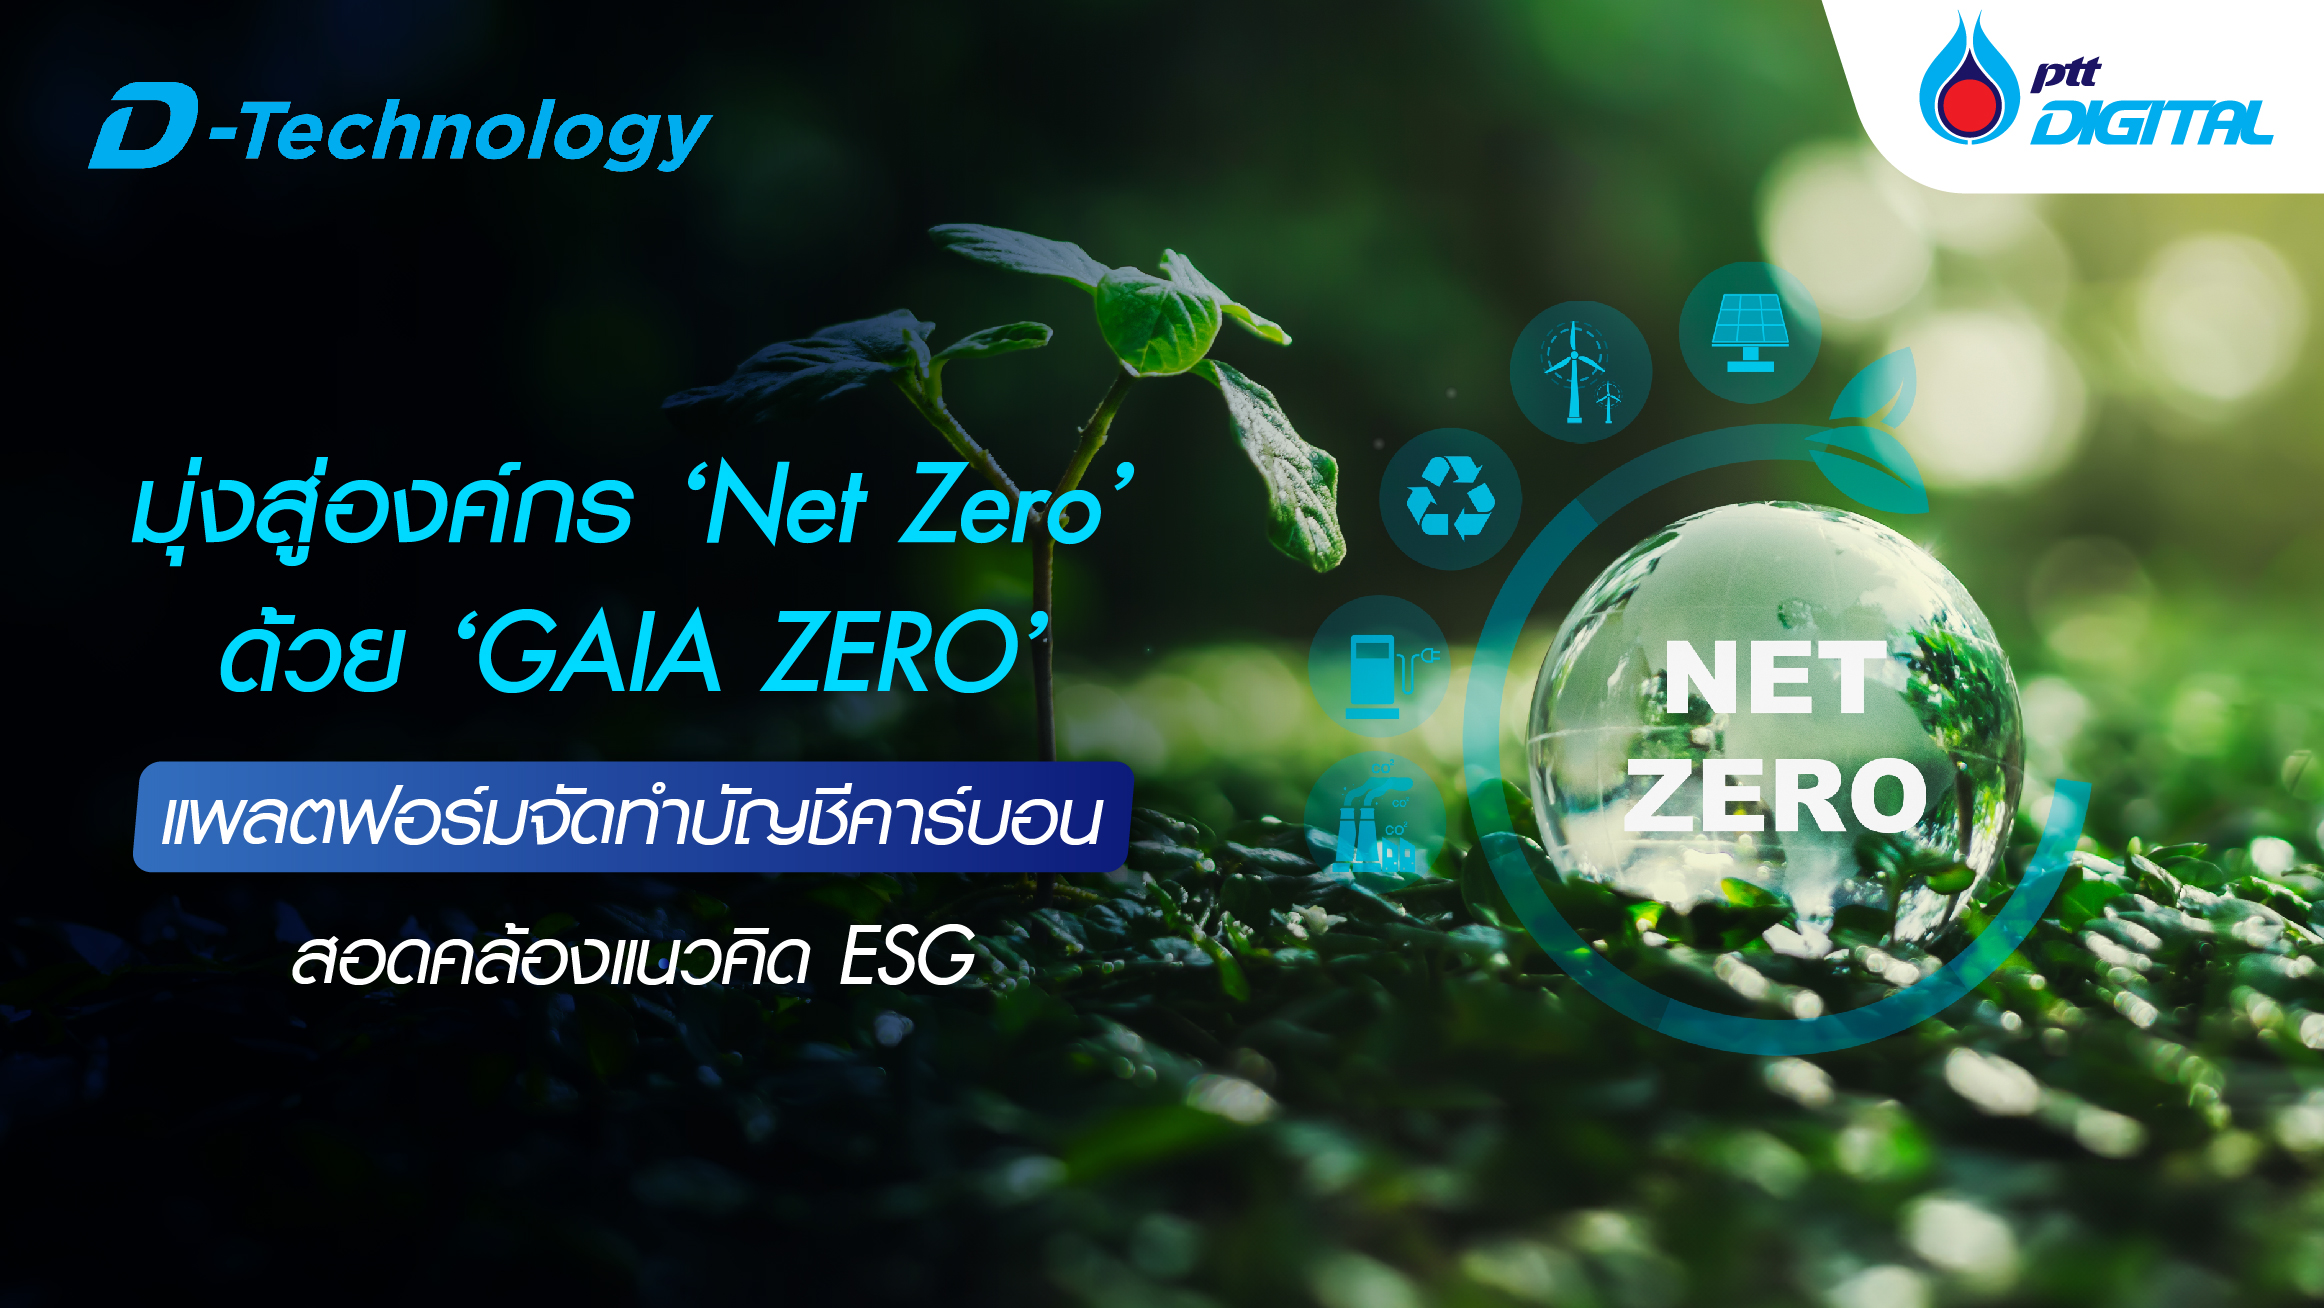 มุ่งสู่องค์กร ‘Net Zero’ ด้วย ‘GAIA ZERO’ แพลตฟอร์มจัดทำบัญชีคาร์บอน สอดคล้องแนวคิด ESG